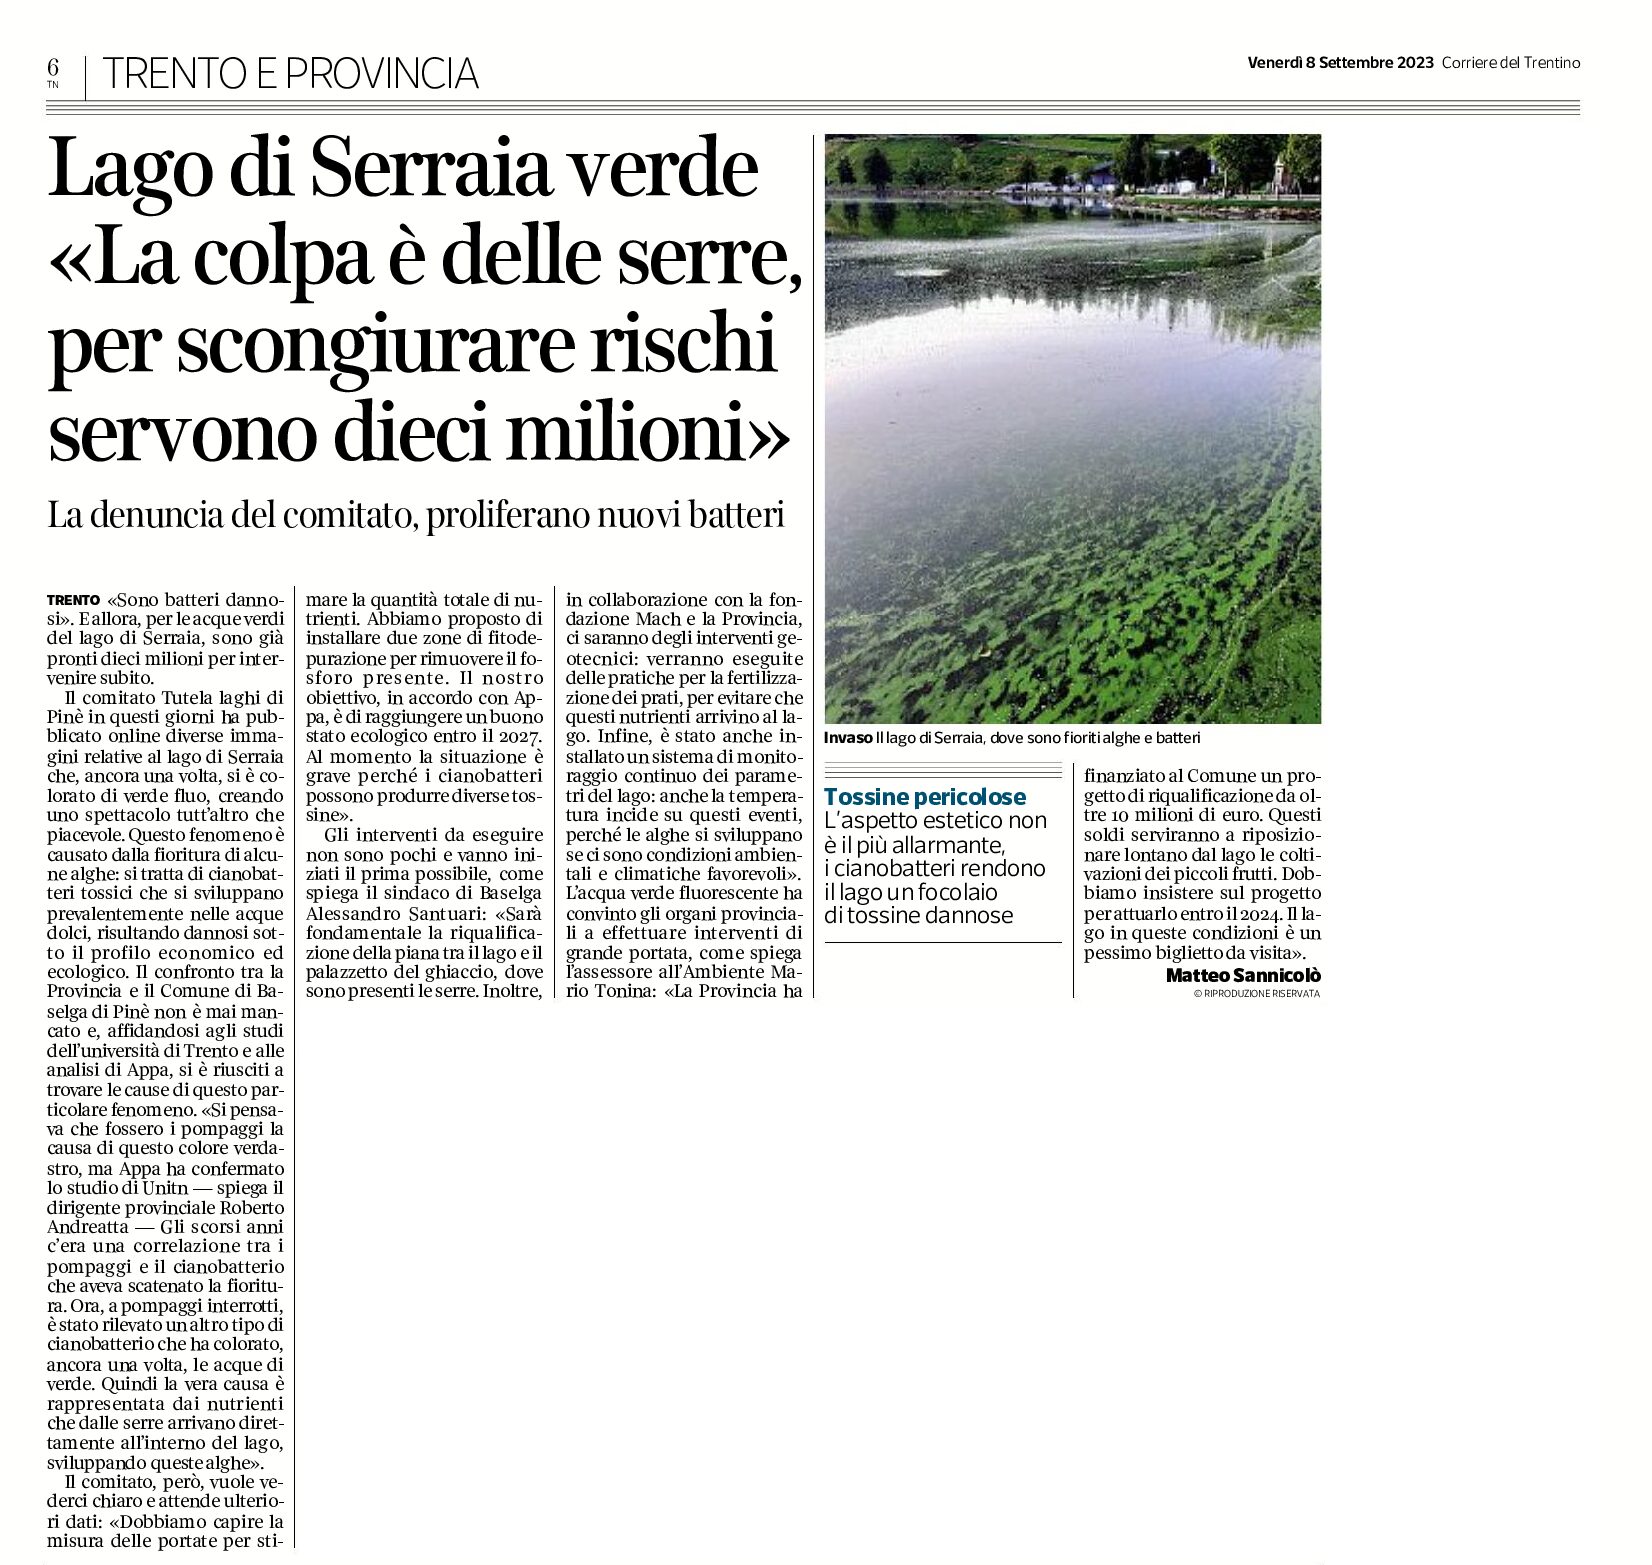 Lago di Serraia: verde “la colpa è delle serre”. Proliferano nuovi batteri